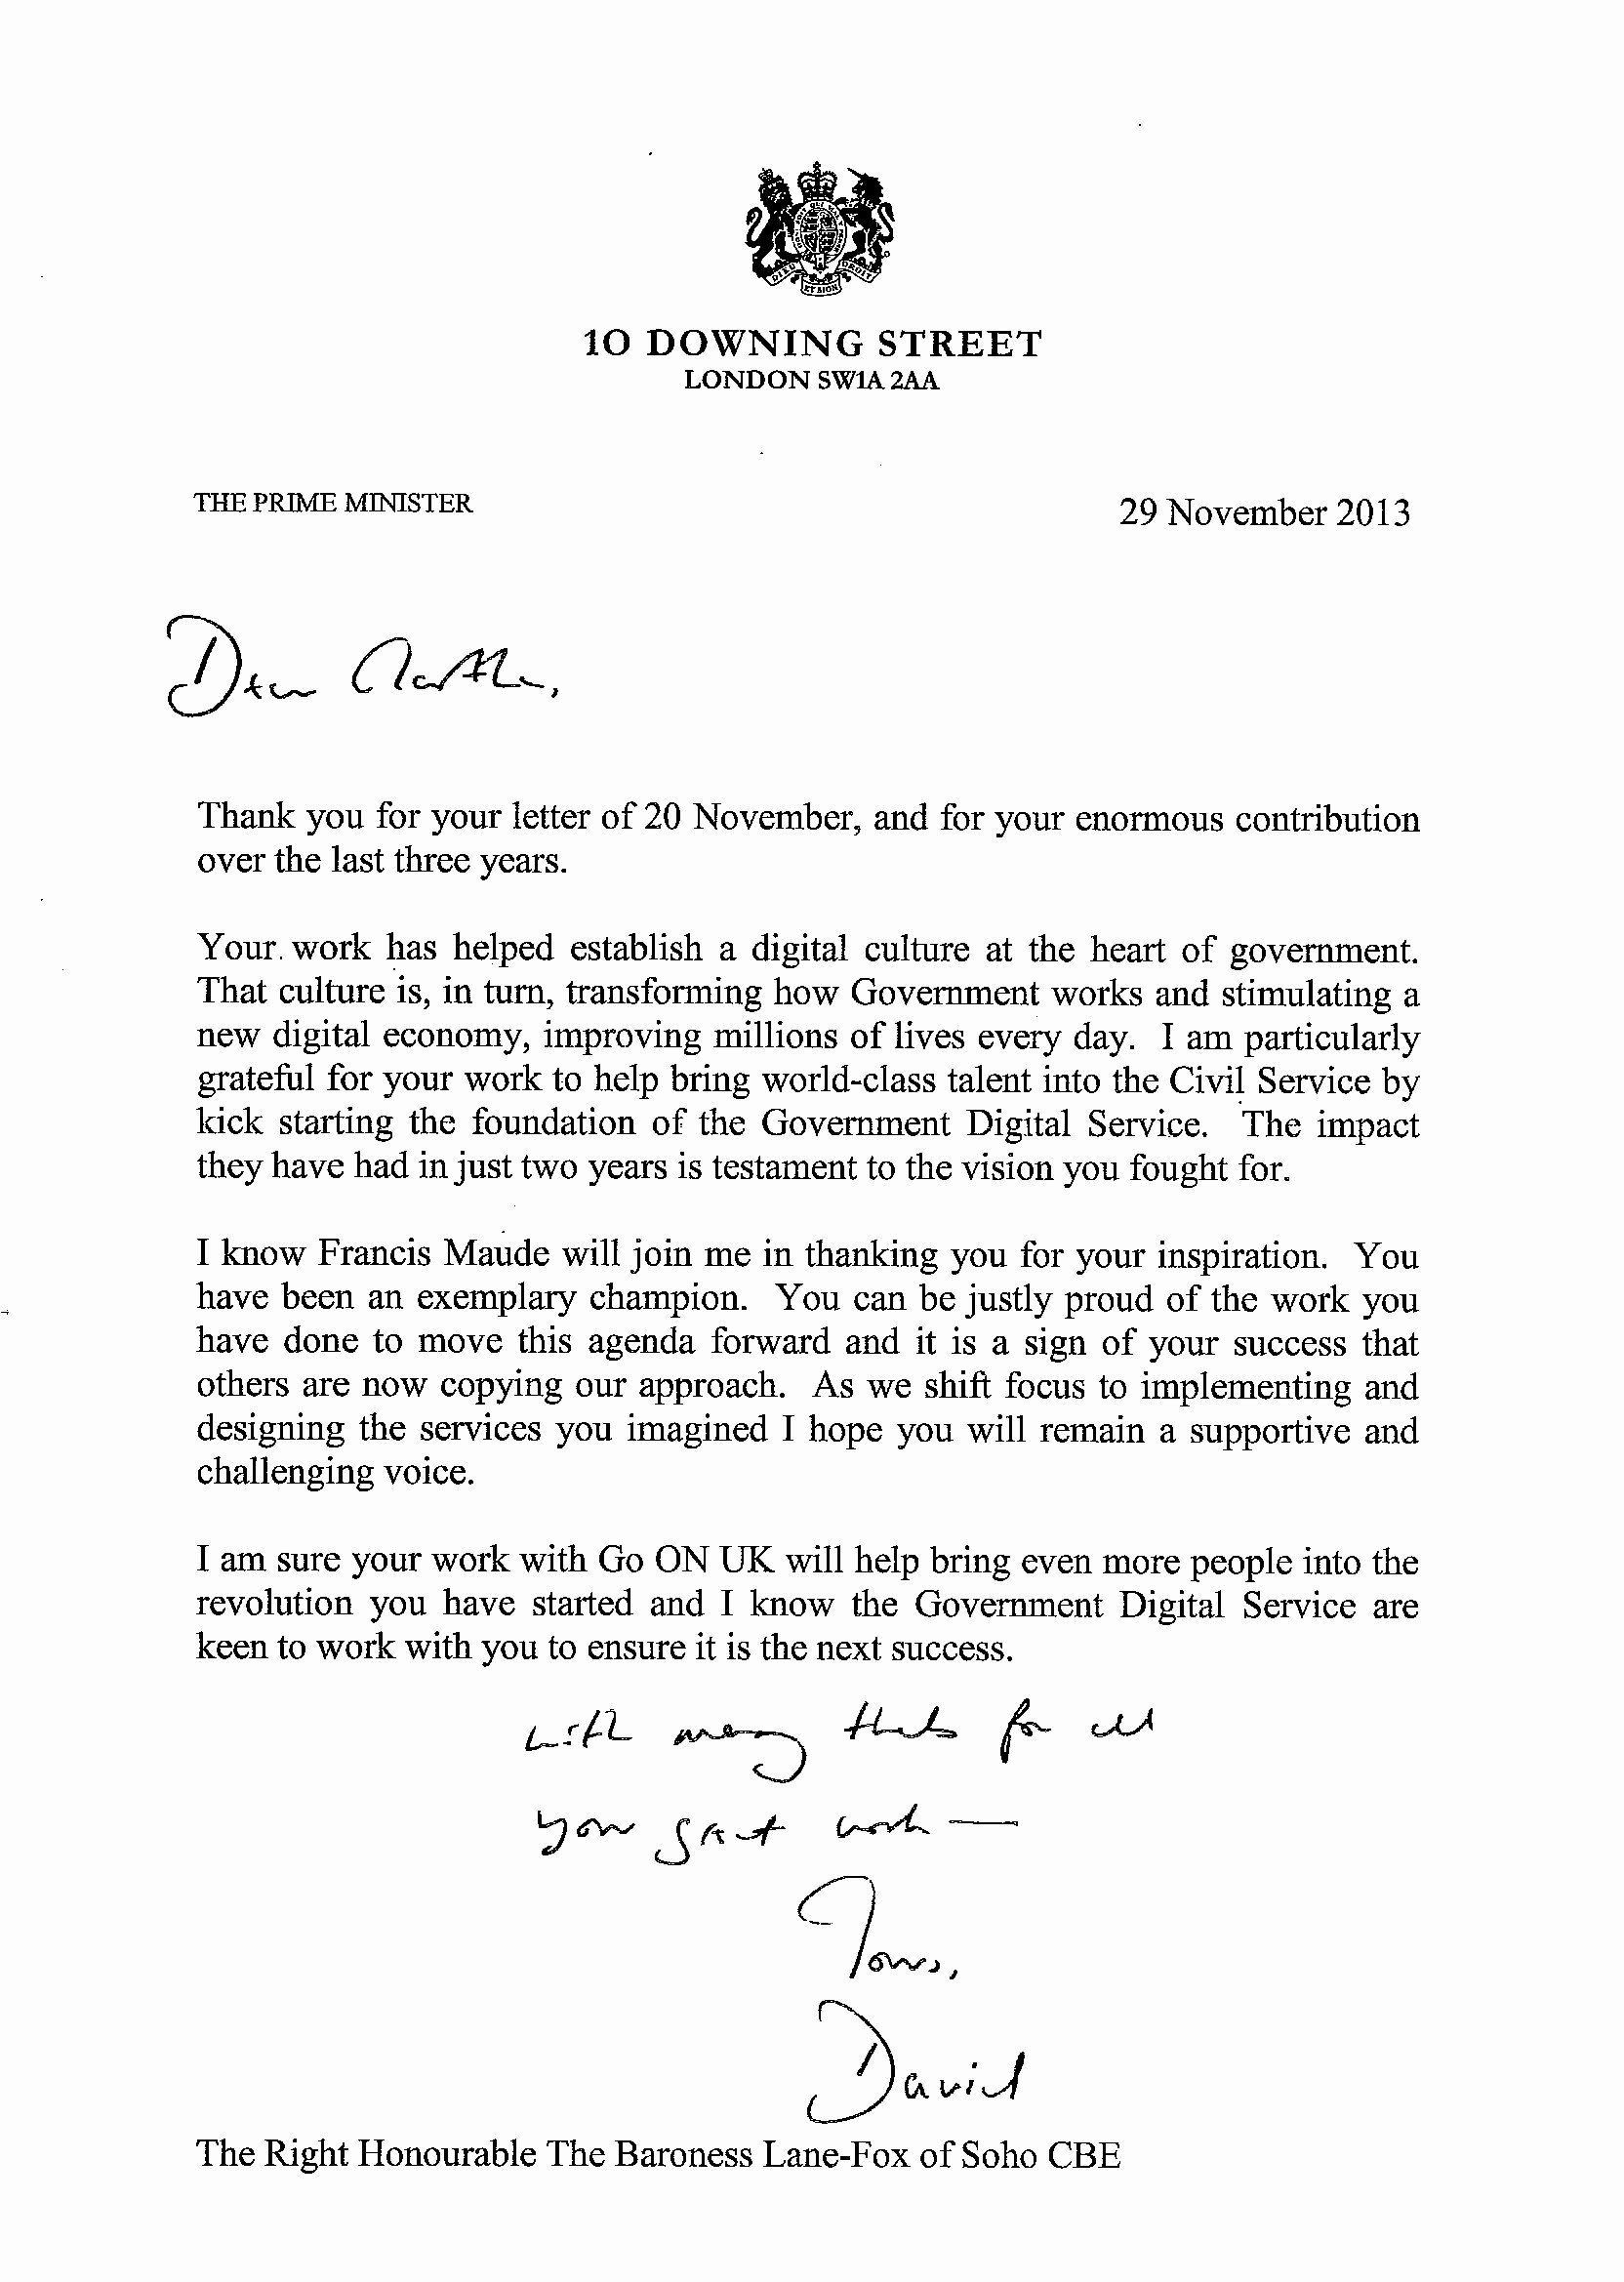 Official Letter format to Government Elegant Martha Lane Fox Resignation Letter Gov Uk